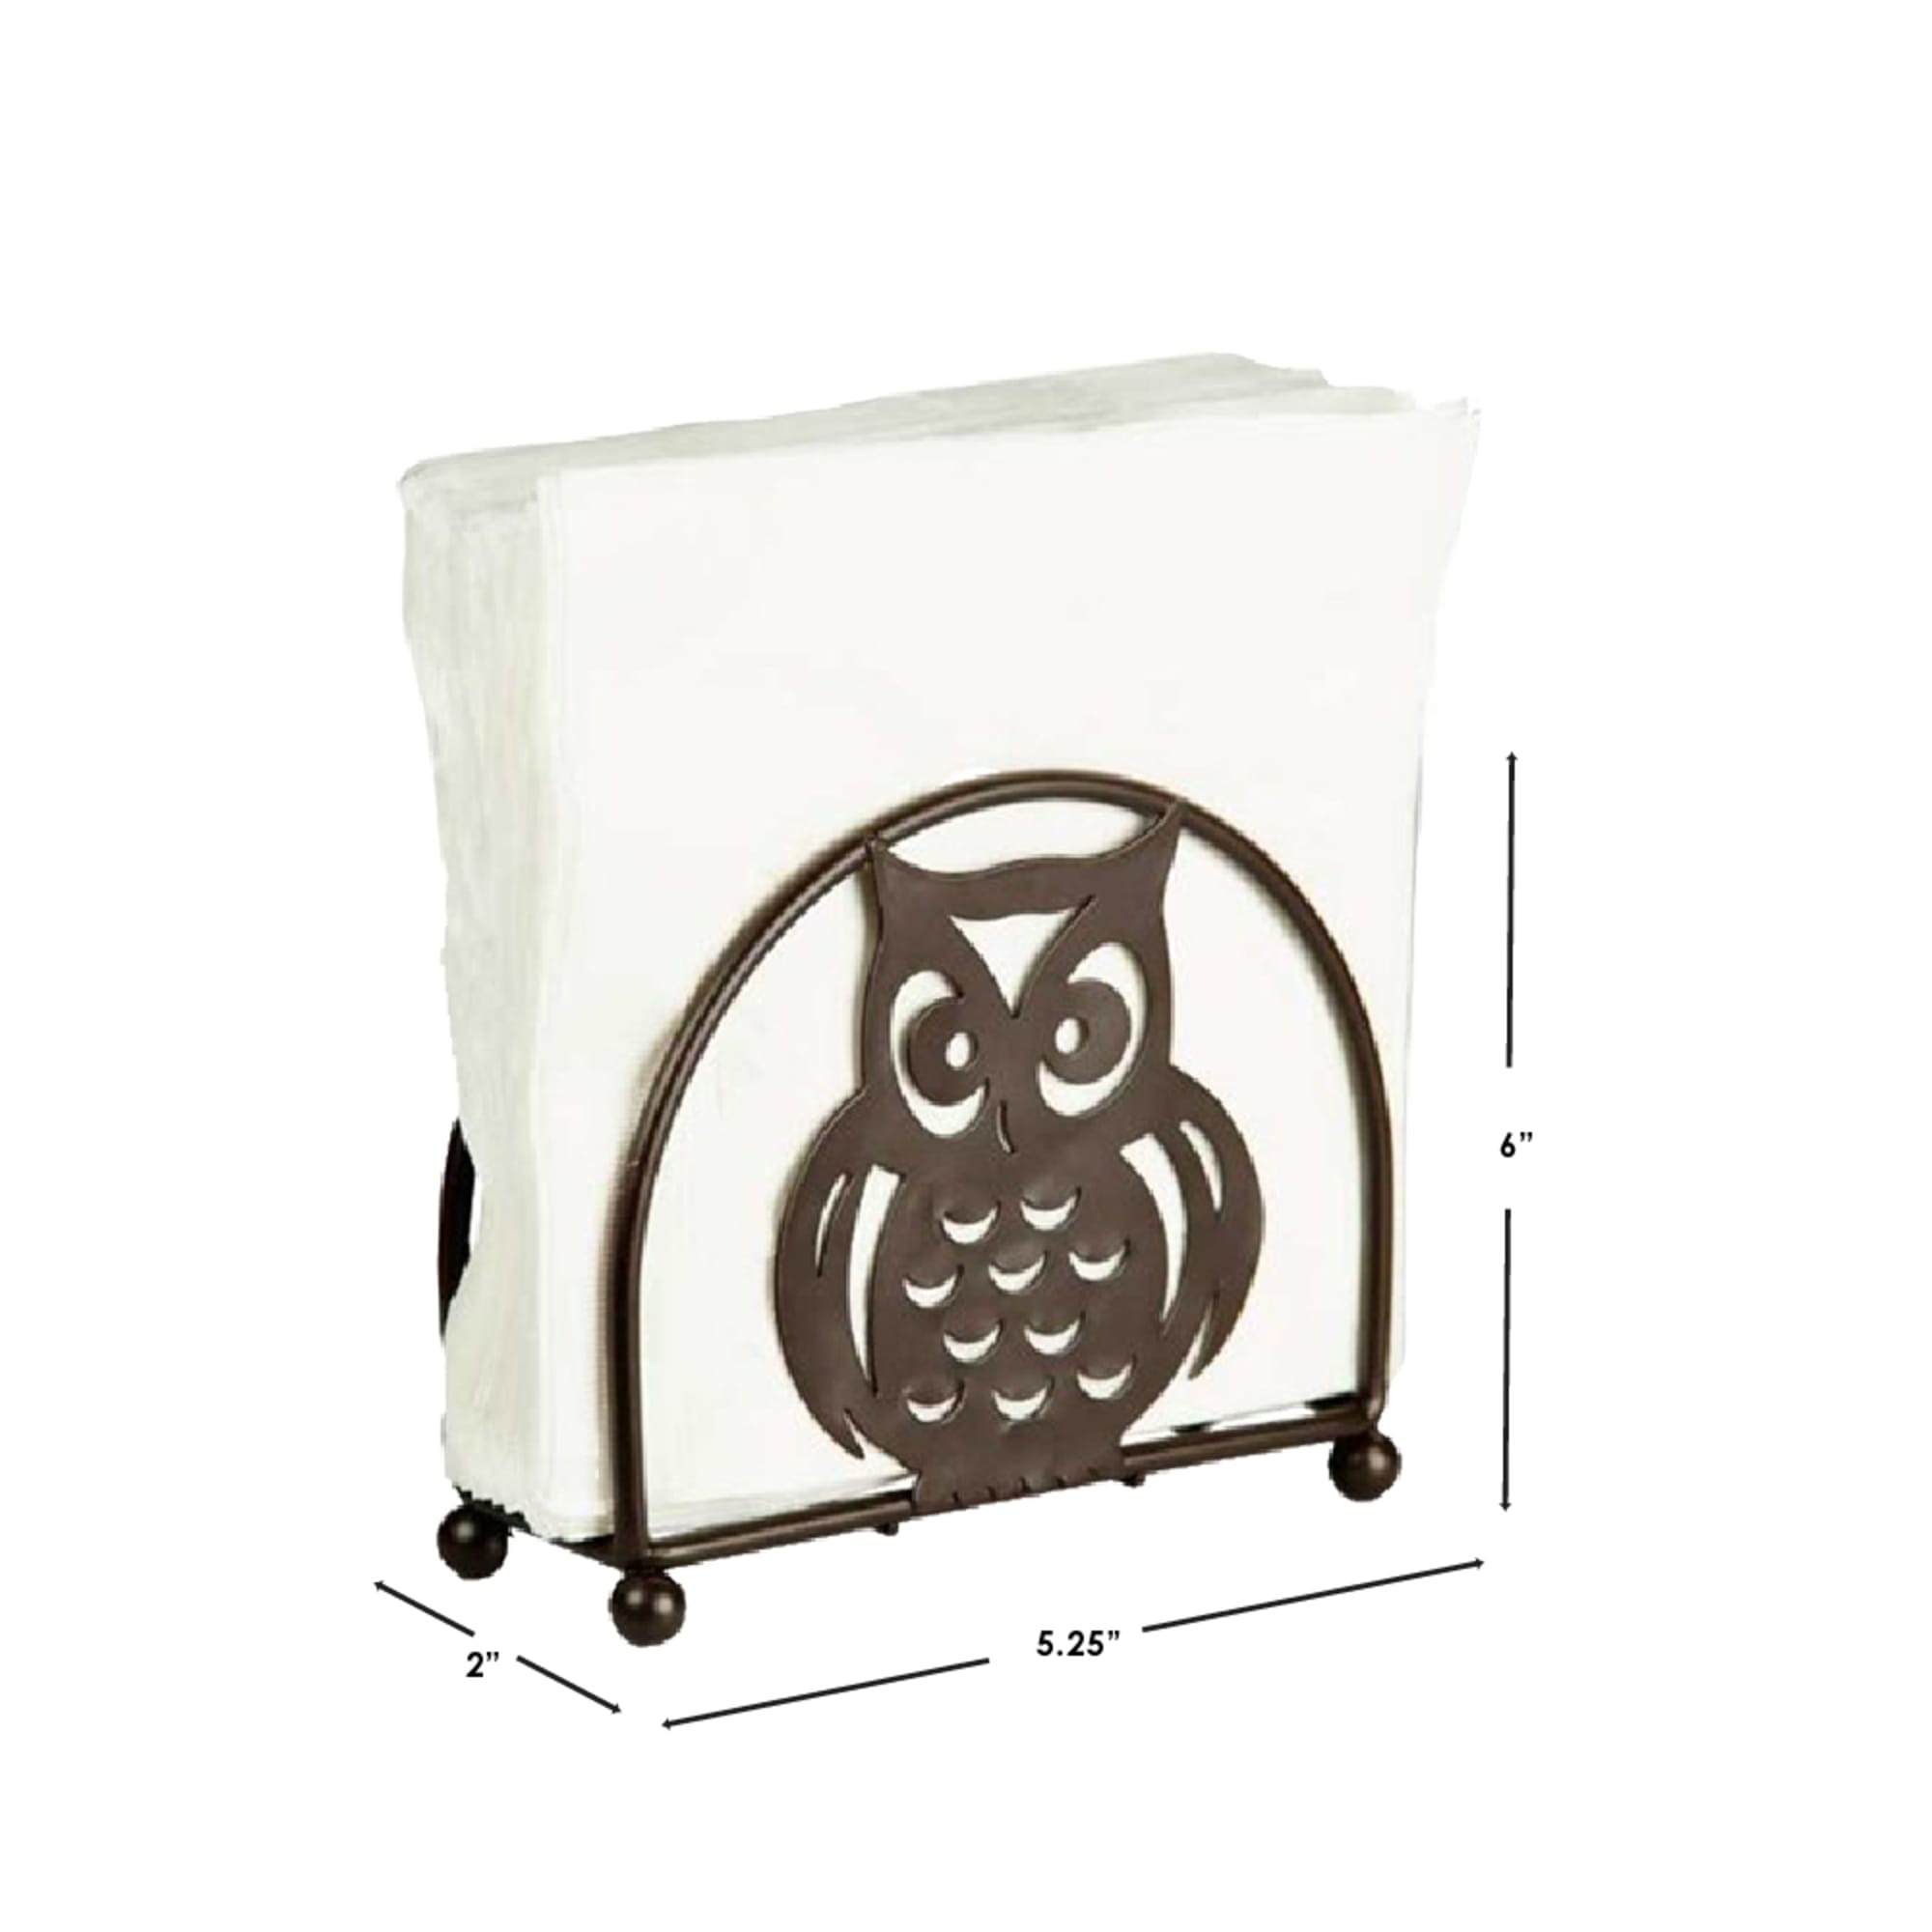 Home Basics Owl Napkin Holder, Bronze $5.00 EACH, CASE PACK OF 12